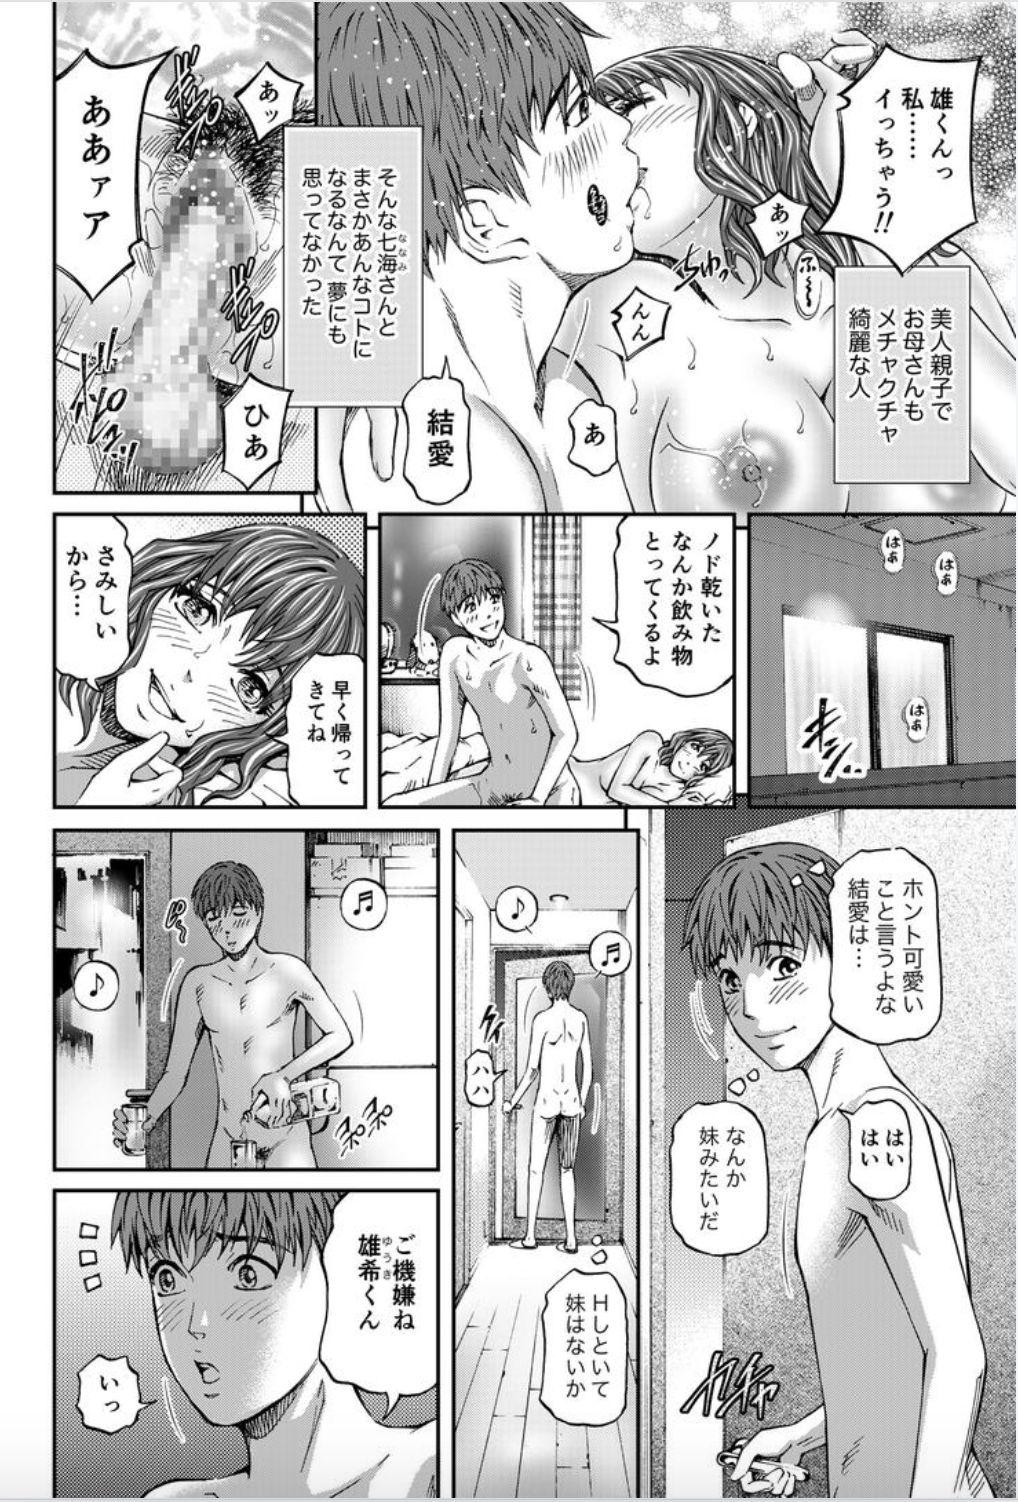 Masturbation Onna-tachi ga Iku Toki... Ero Drama Vol. 8 Datte, Kanojo no Haha ga... Doctor Sex - Page 4